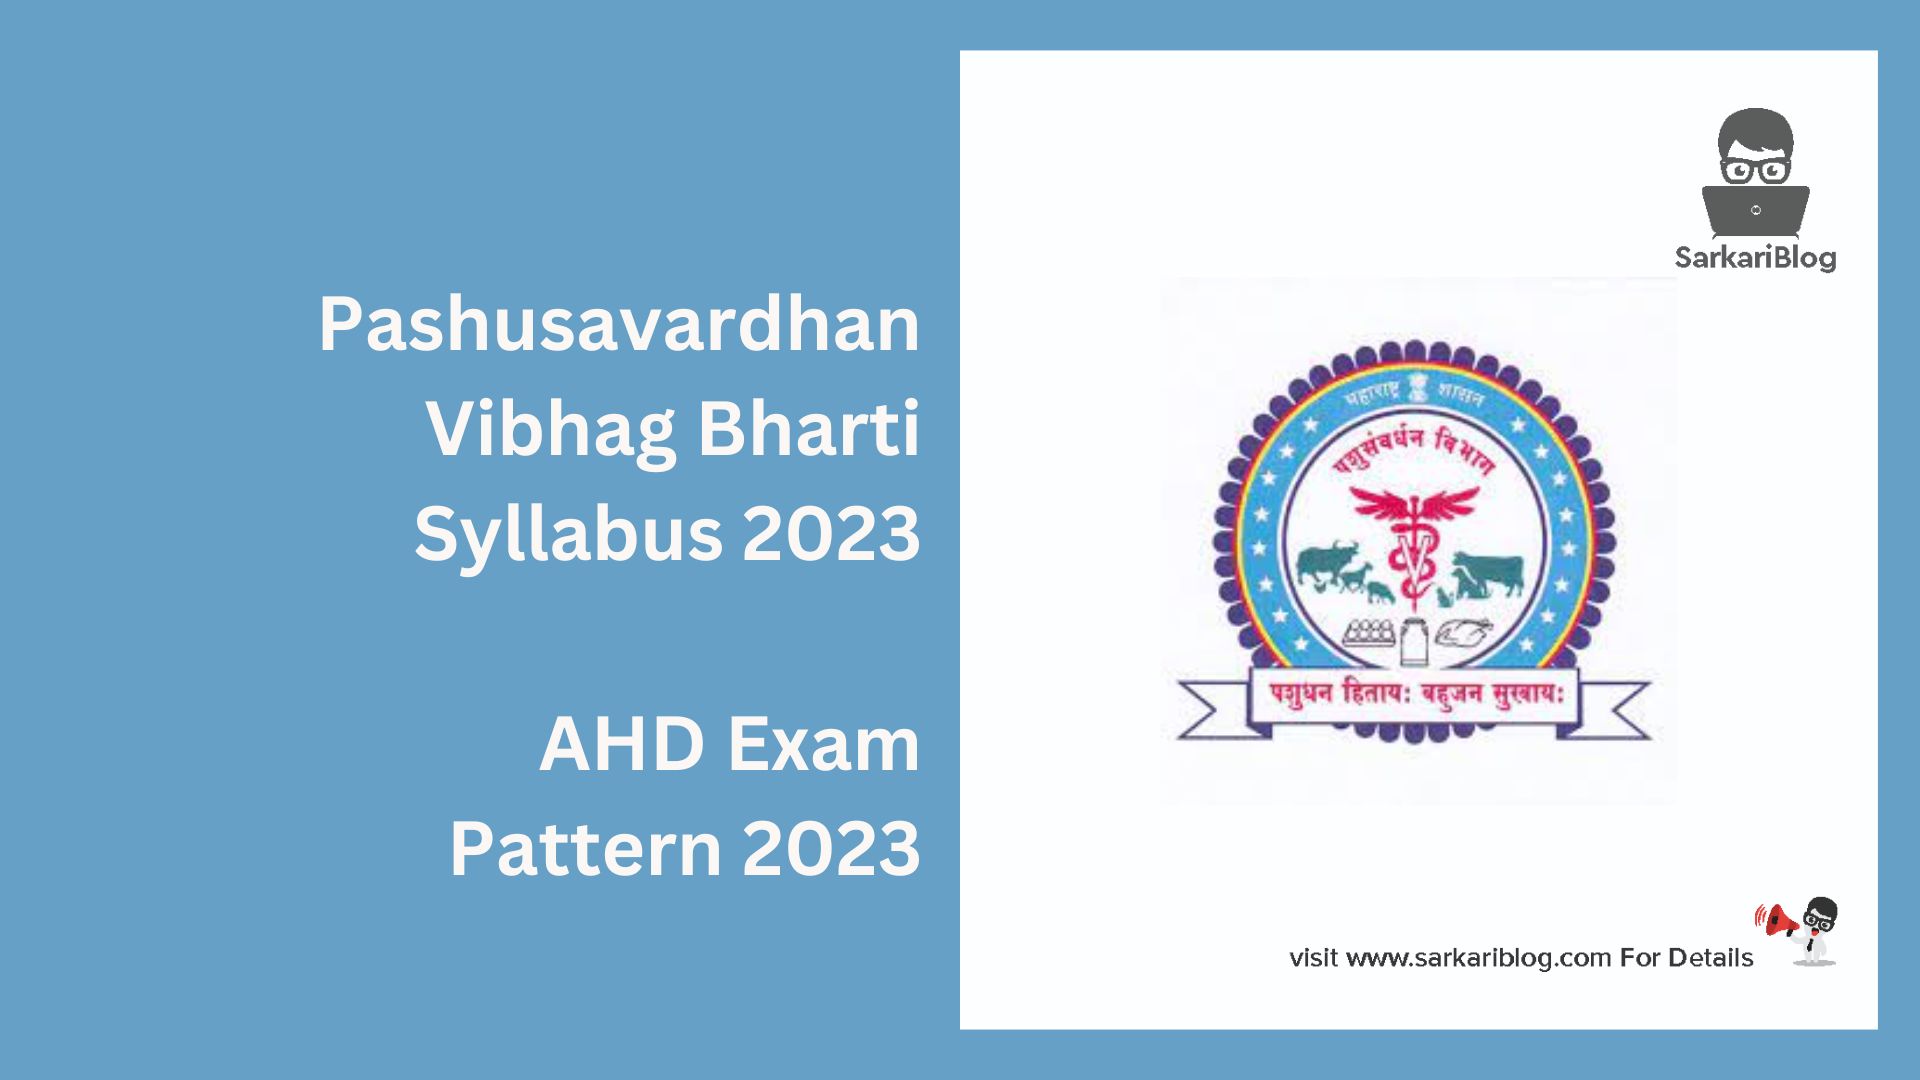 Pashusavardhan Vibhag Bharti Syllabus 2023